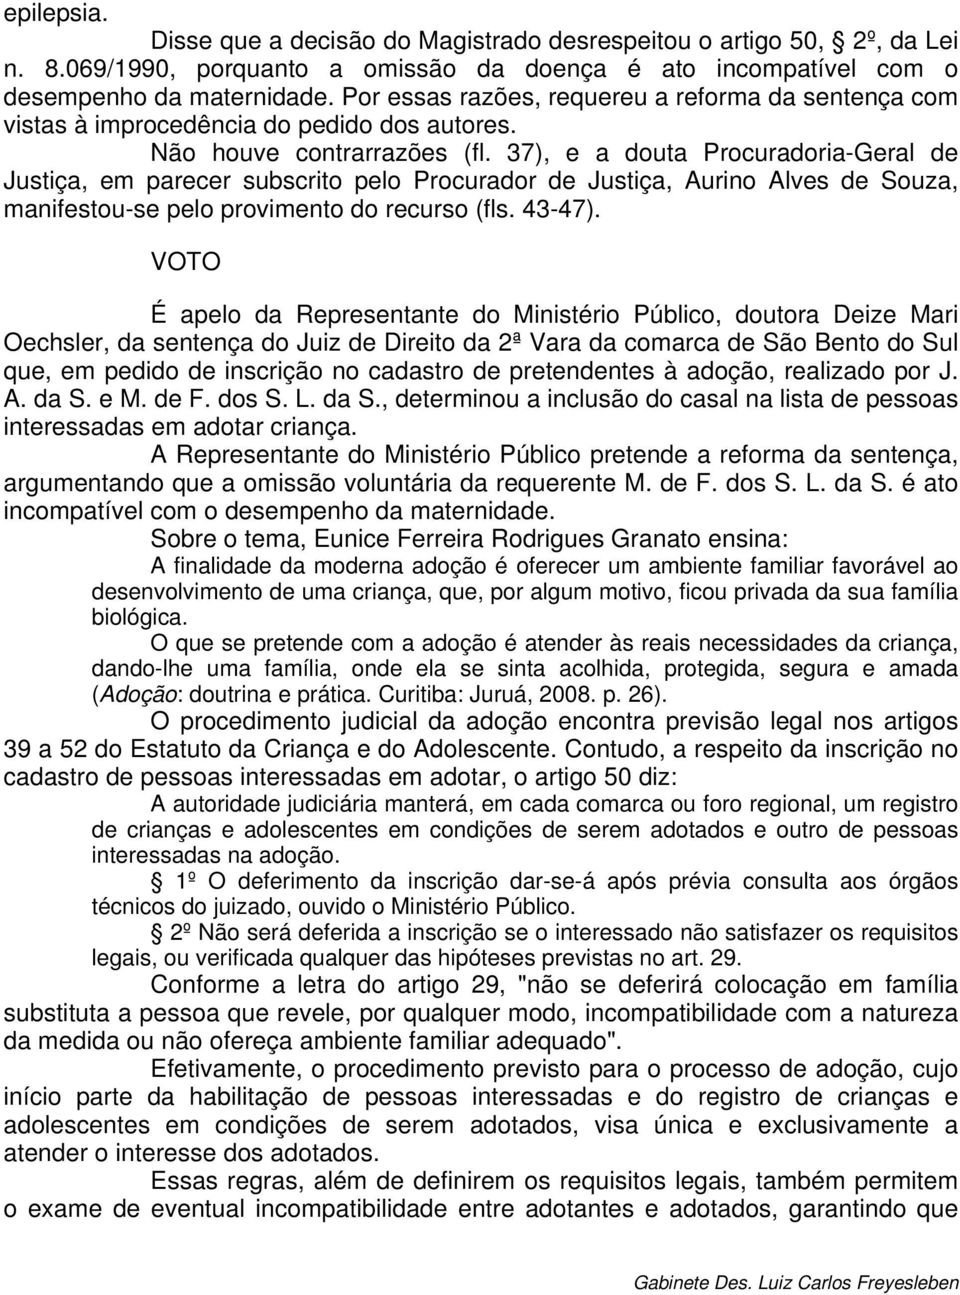 37), e a douta Procuradoria-Geral de Justiça, em parecer subscrito pelo Procurador de Justiça, Aurino Alves de Souza, manifestou-se pelo provimento do recurso (fls. 43-47).